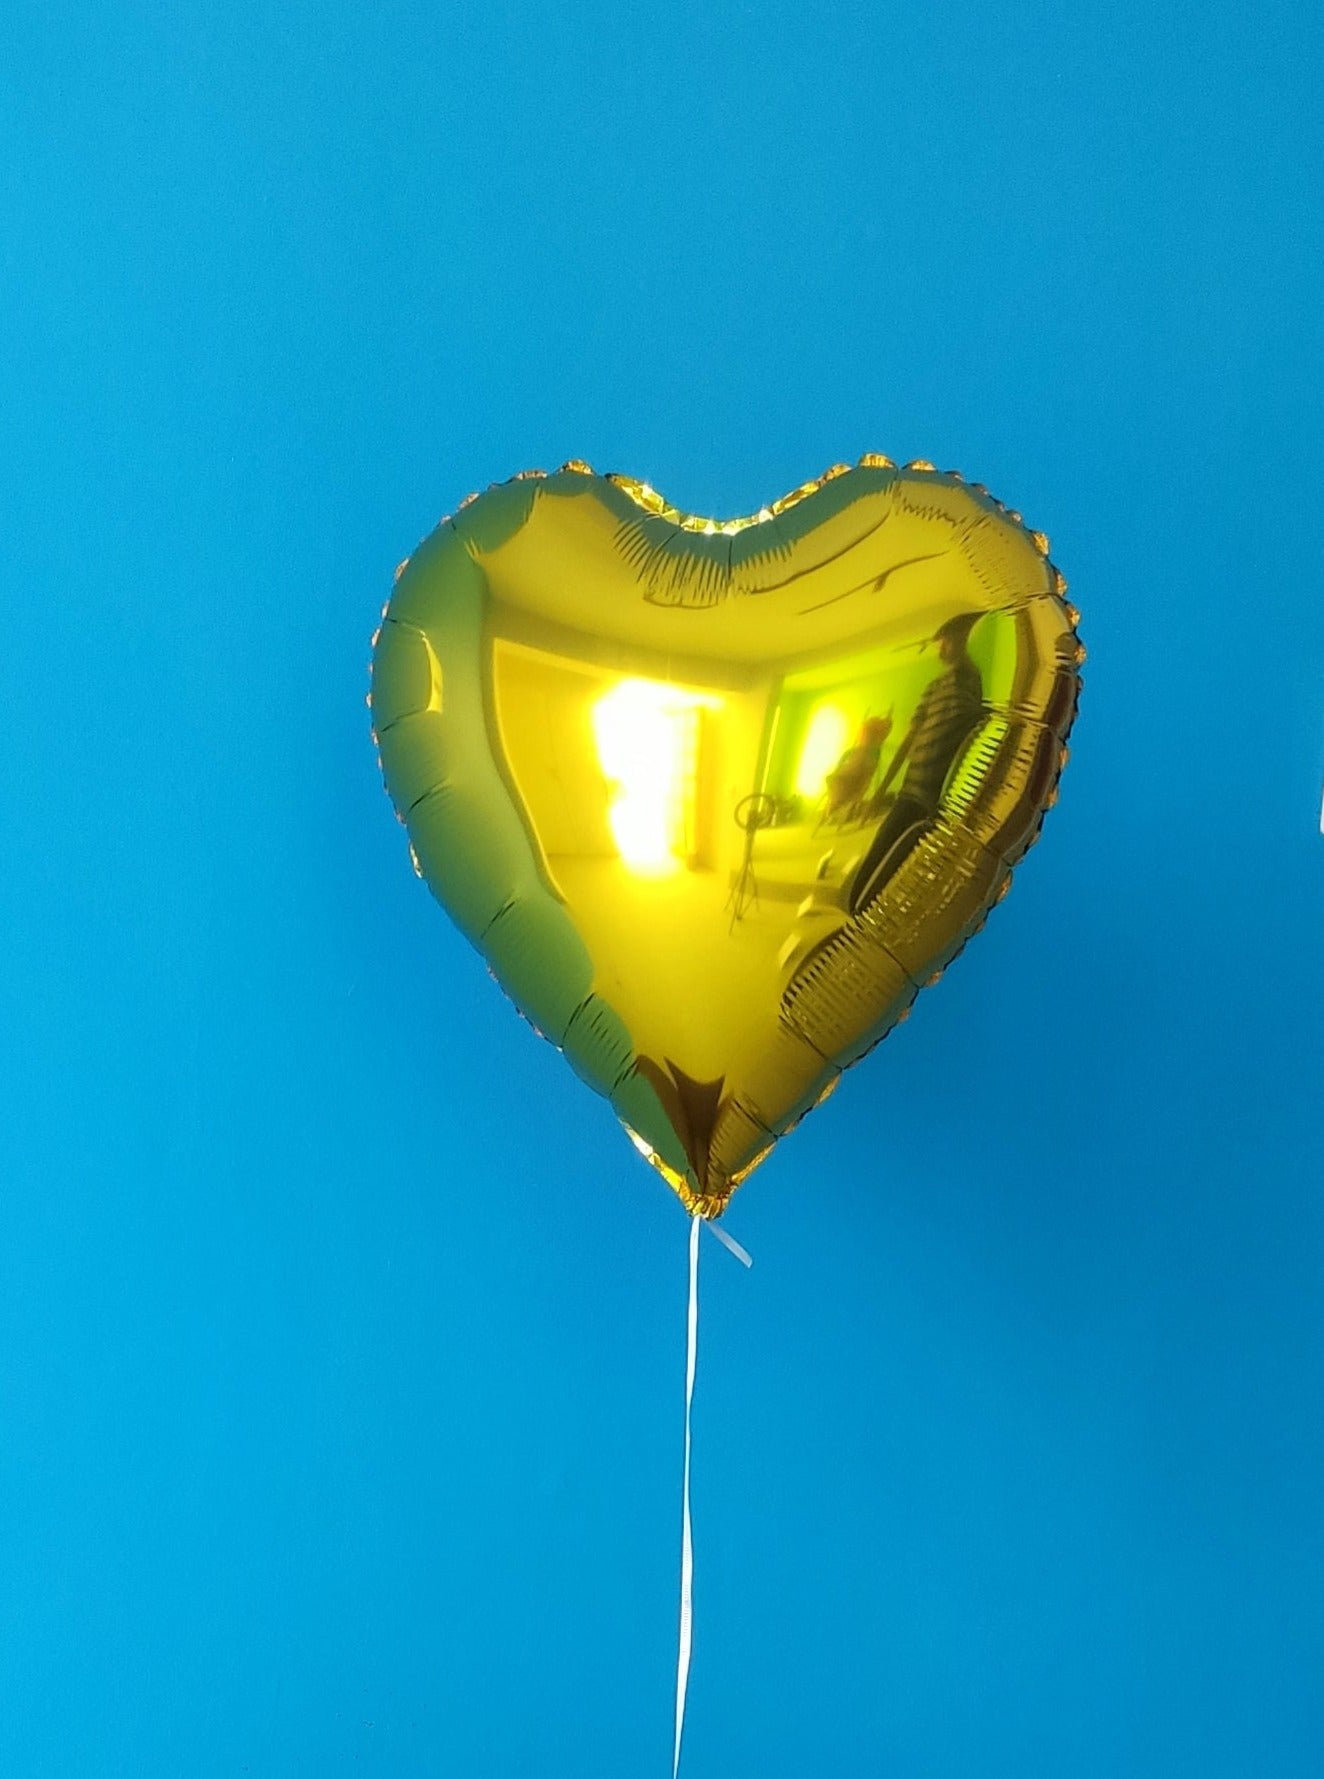 Balão - Coração Amarelo